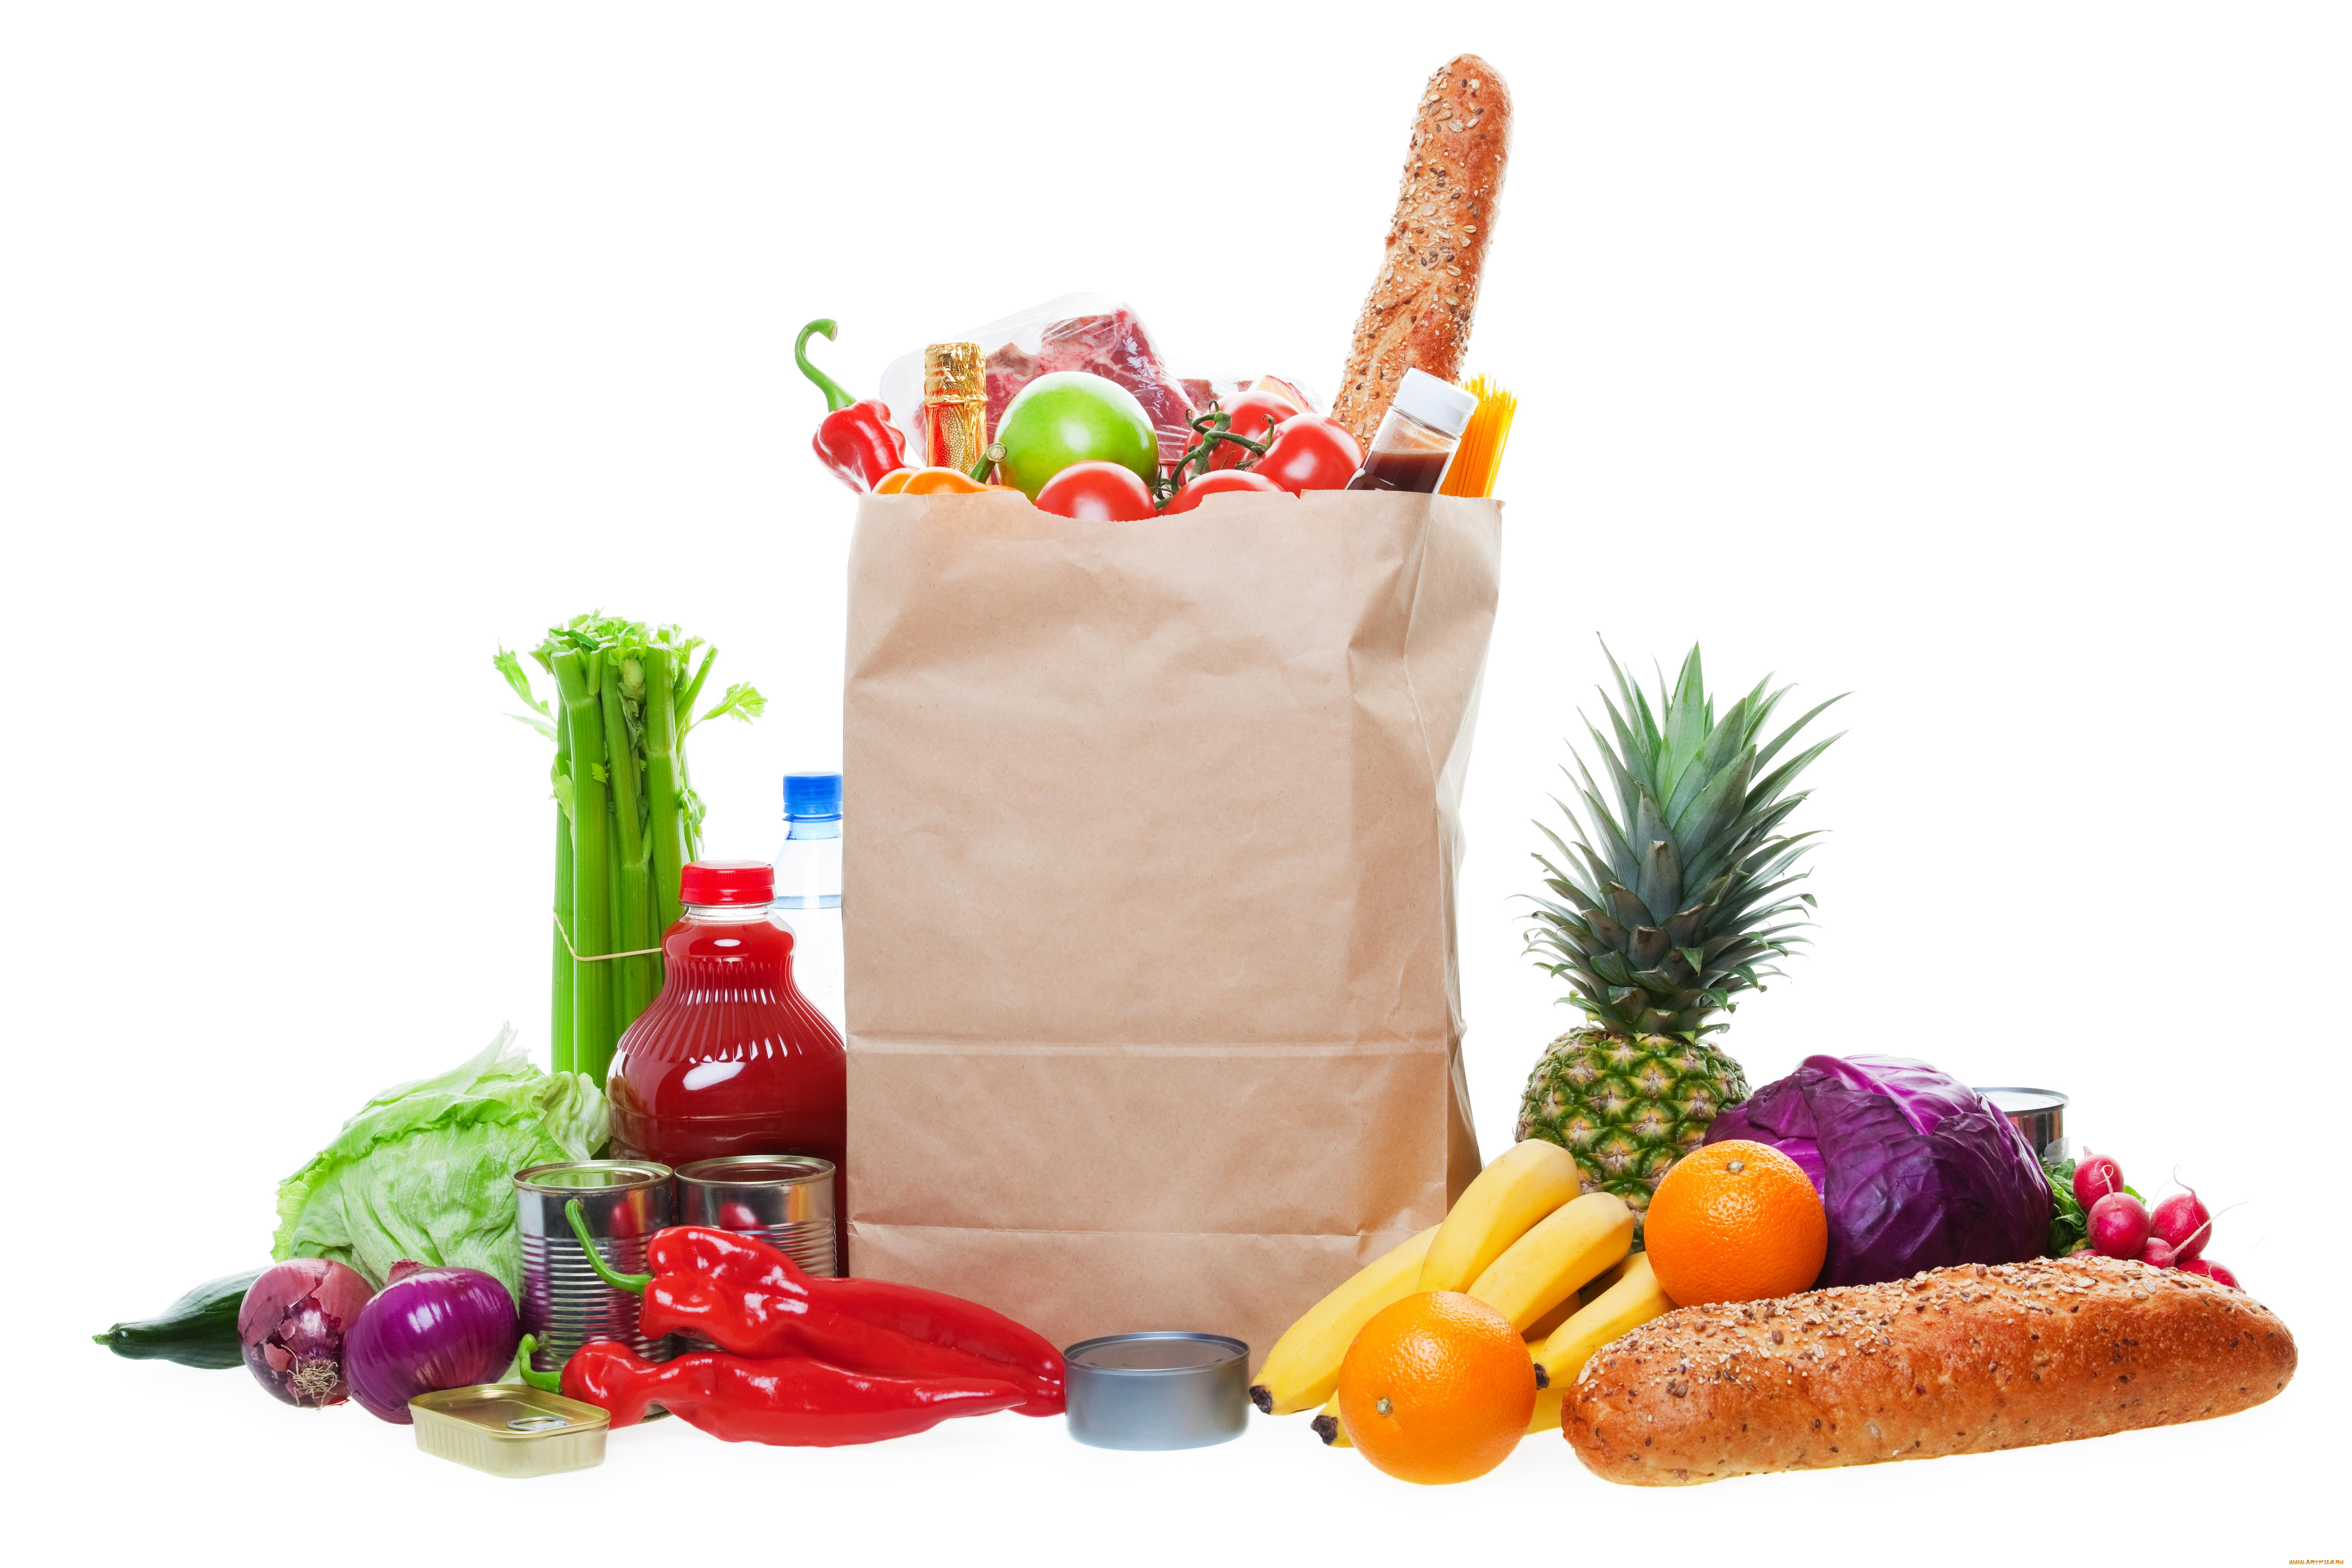 еда, разное, фрукты, ананас, капуста, спаржа, бутылки, покупки, овощи, хлеб, пакет